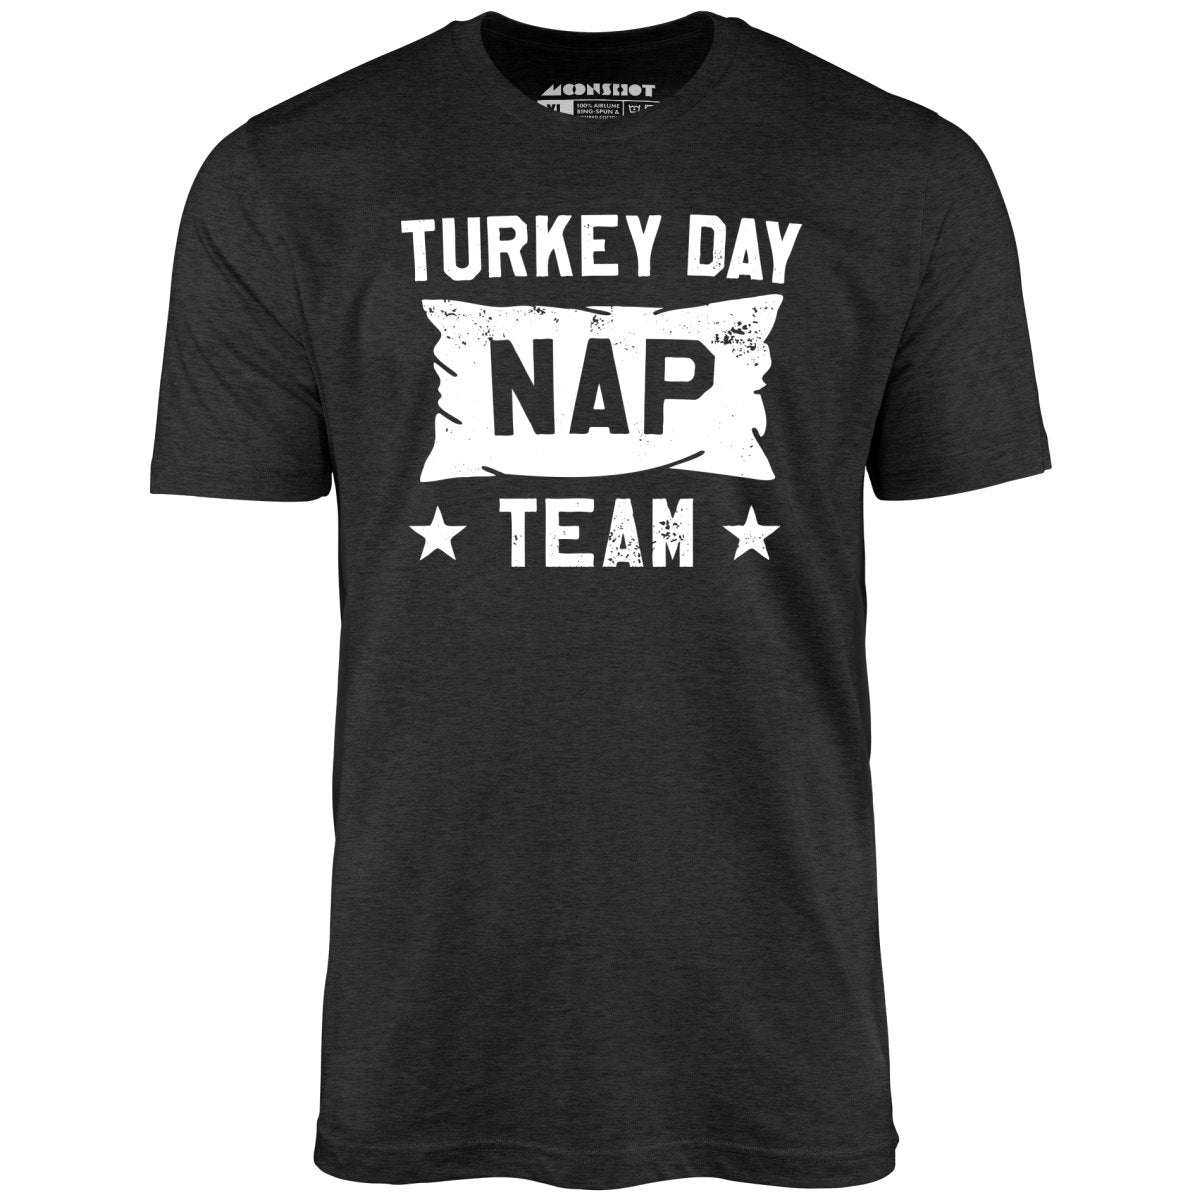 Turkey Day Nap Team - Unisex T-Shirt